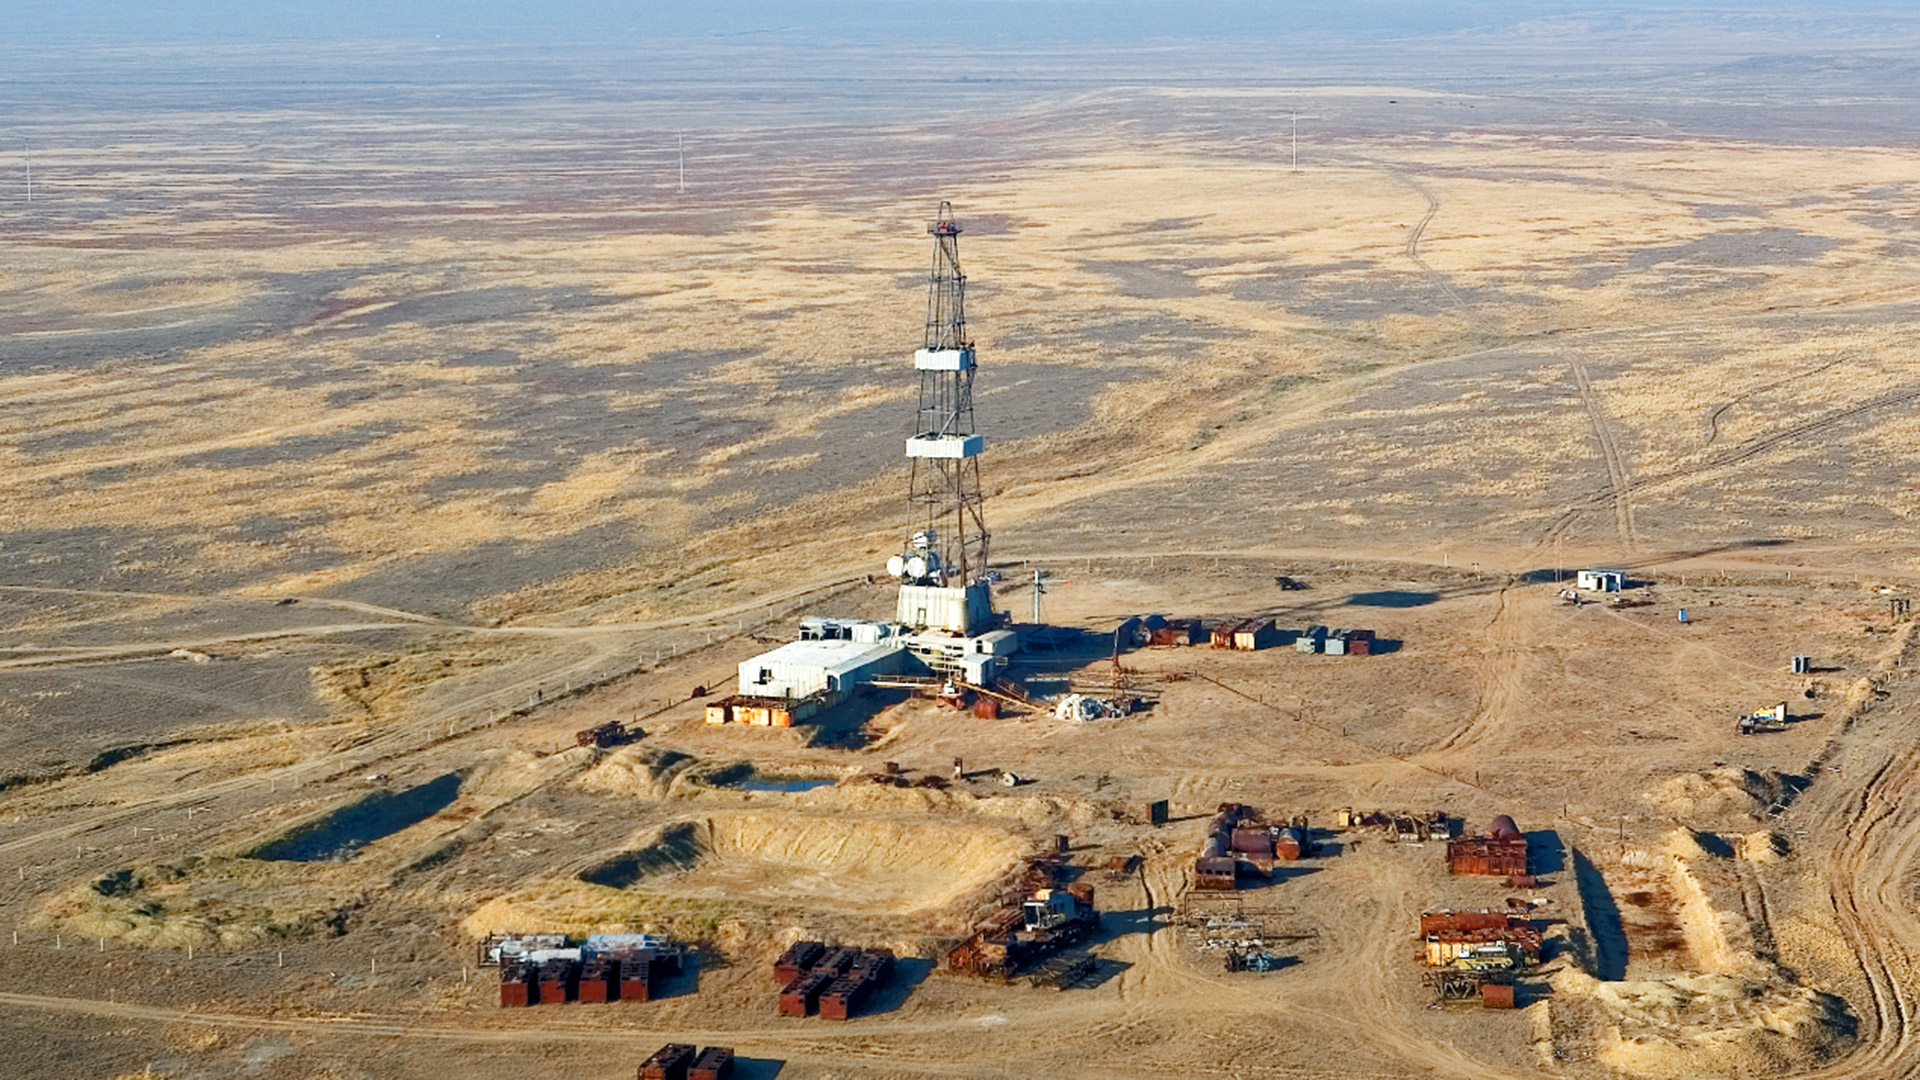 【走進中亞】哈薩克斯坦是中國與中亞國家開展油氣合作的重頭戲。阿克糾賓油田的成功開發，將中哈油氣合作推上新台階。圖：阿克糾賓油田鑽井現場。 隱藏文字說明